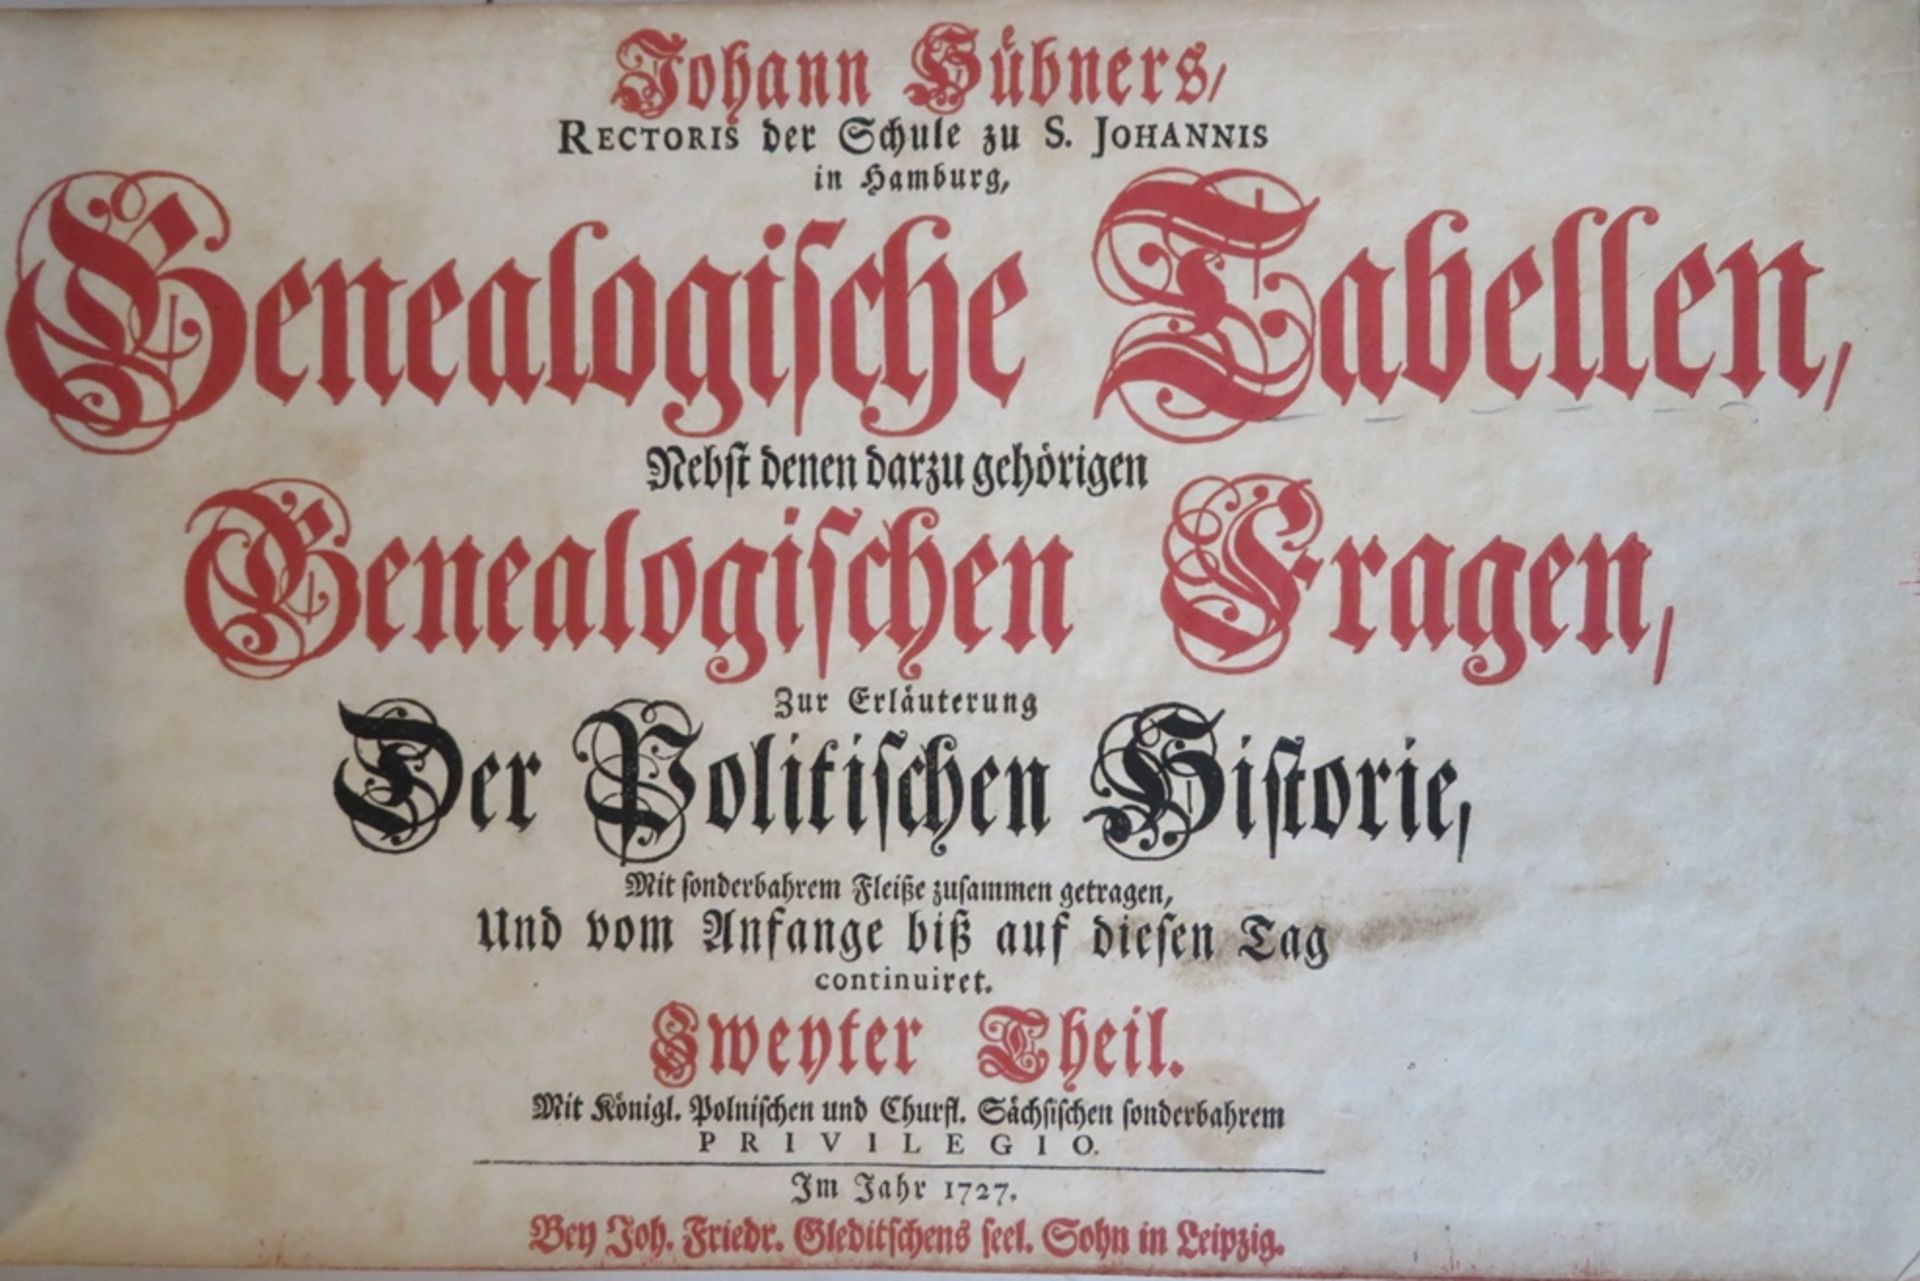 3 Bd., Johann Hübners Genealogische Tabellen, nebst denen darzu gehörigen Genealogischen Fragen, zu - Image 3 of 5